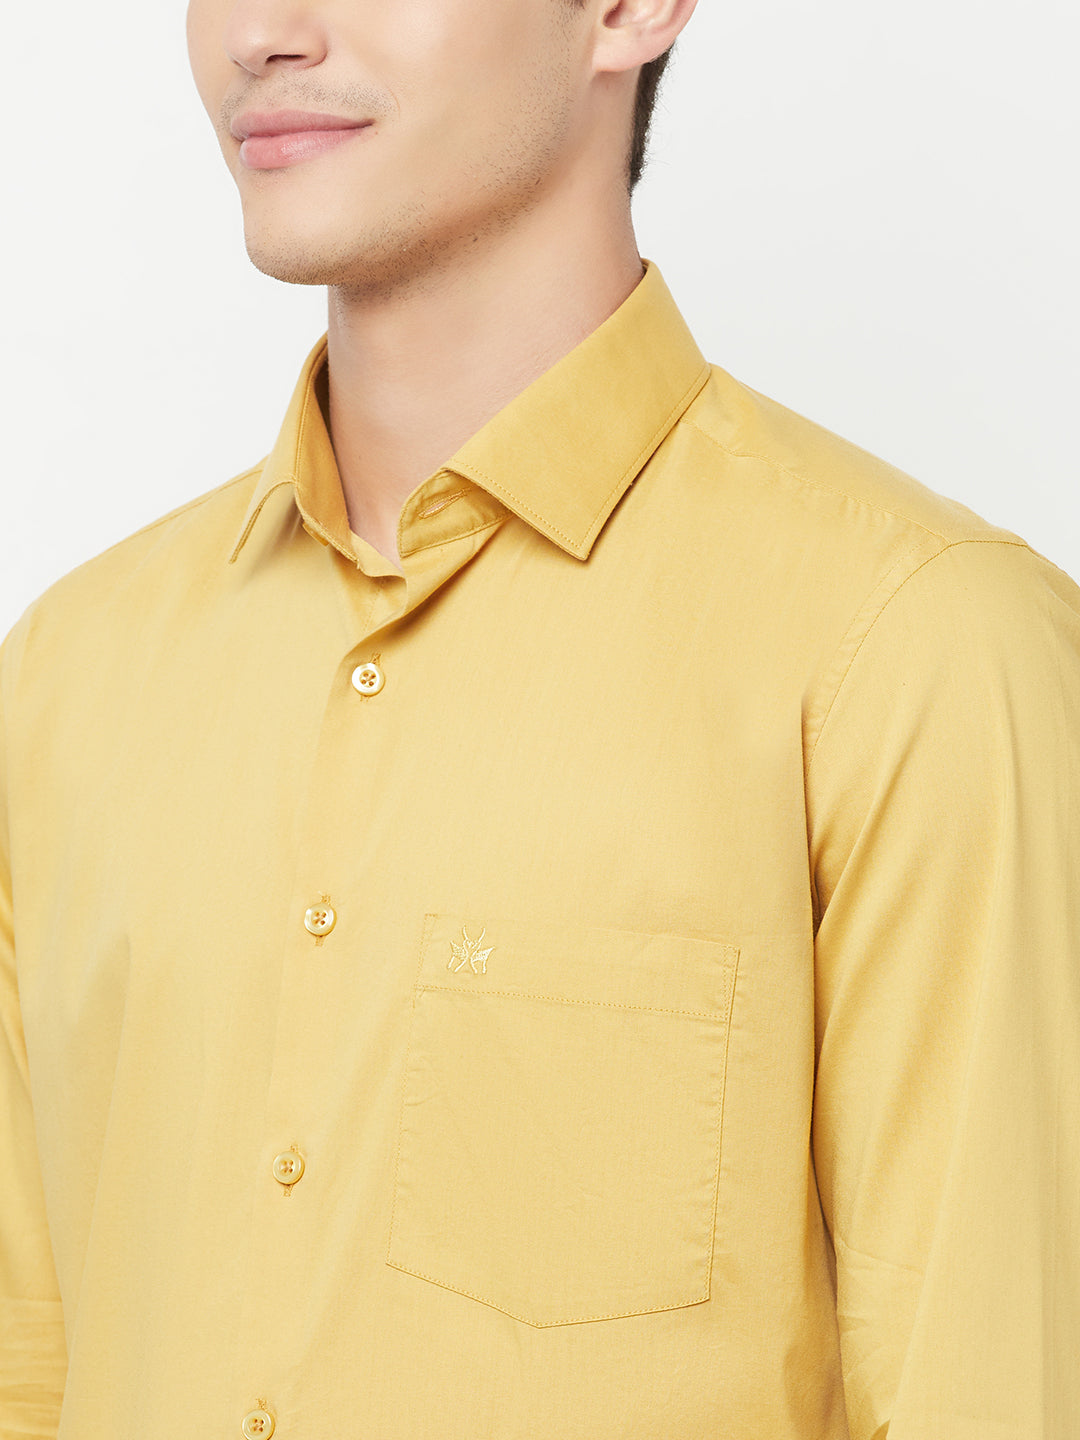 Yellow Shirt - Men Shirts